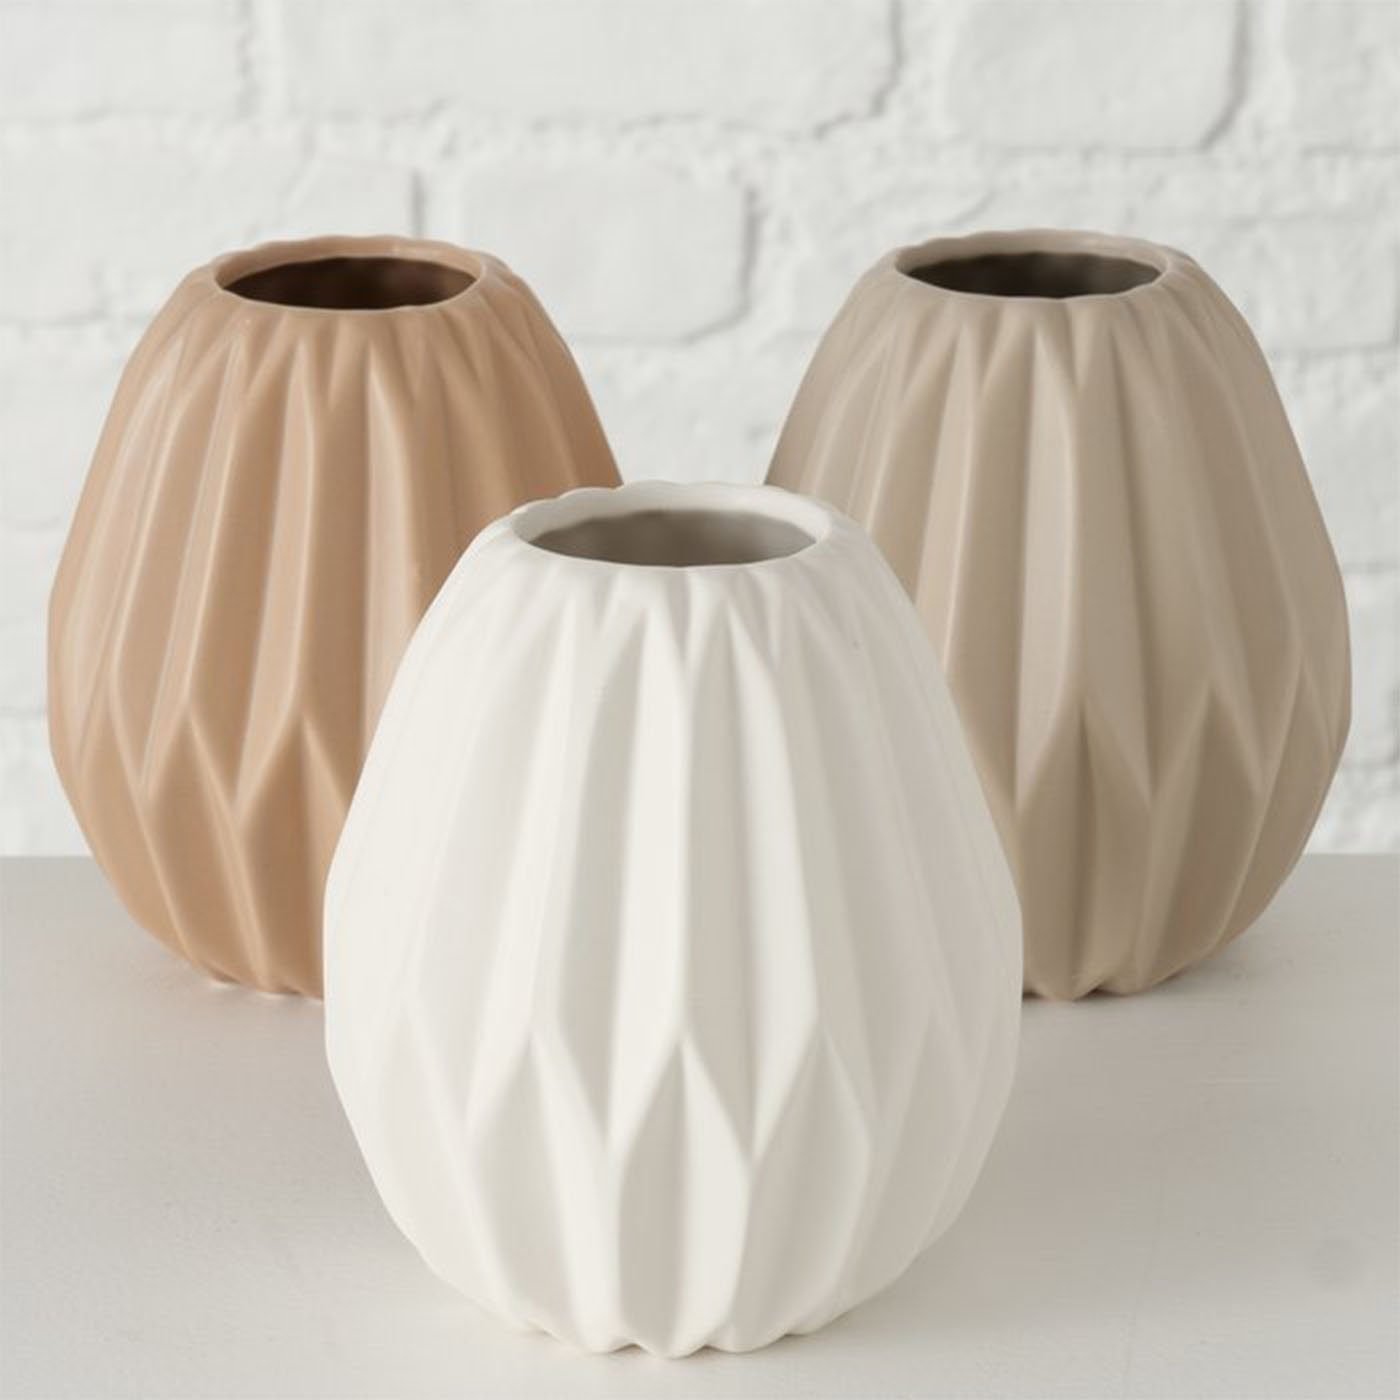 Vase aus Gemometrisches 3er Keramik Design Deko BOLTZE Set Matt Beige&Weiß Tischvase